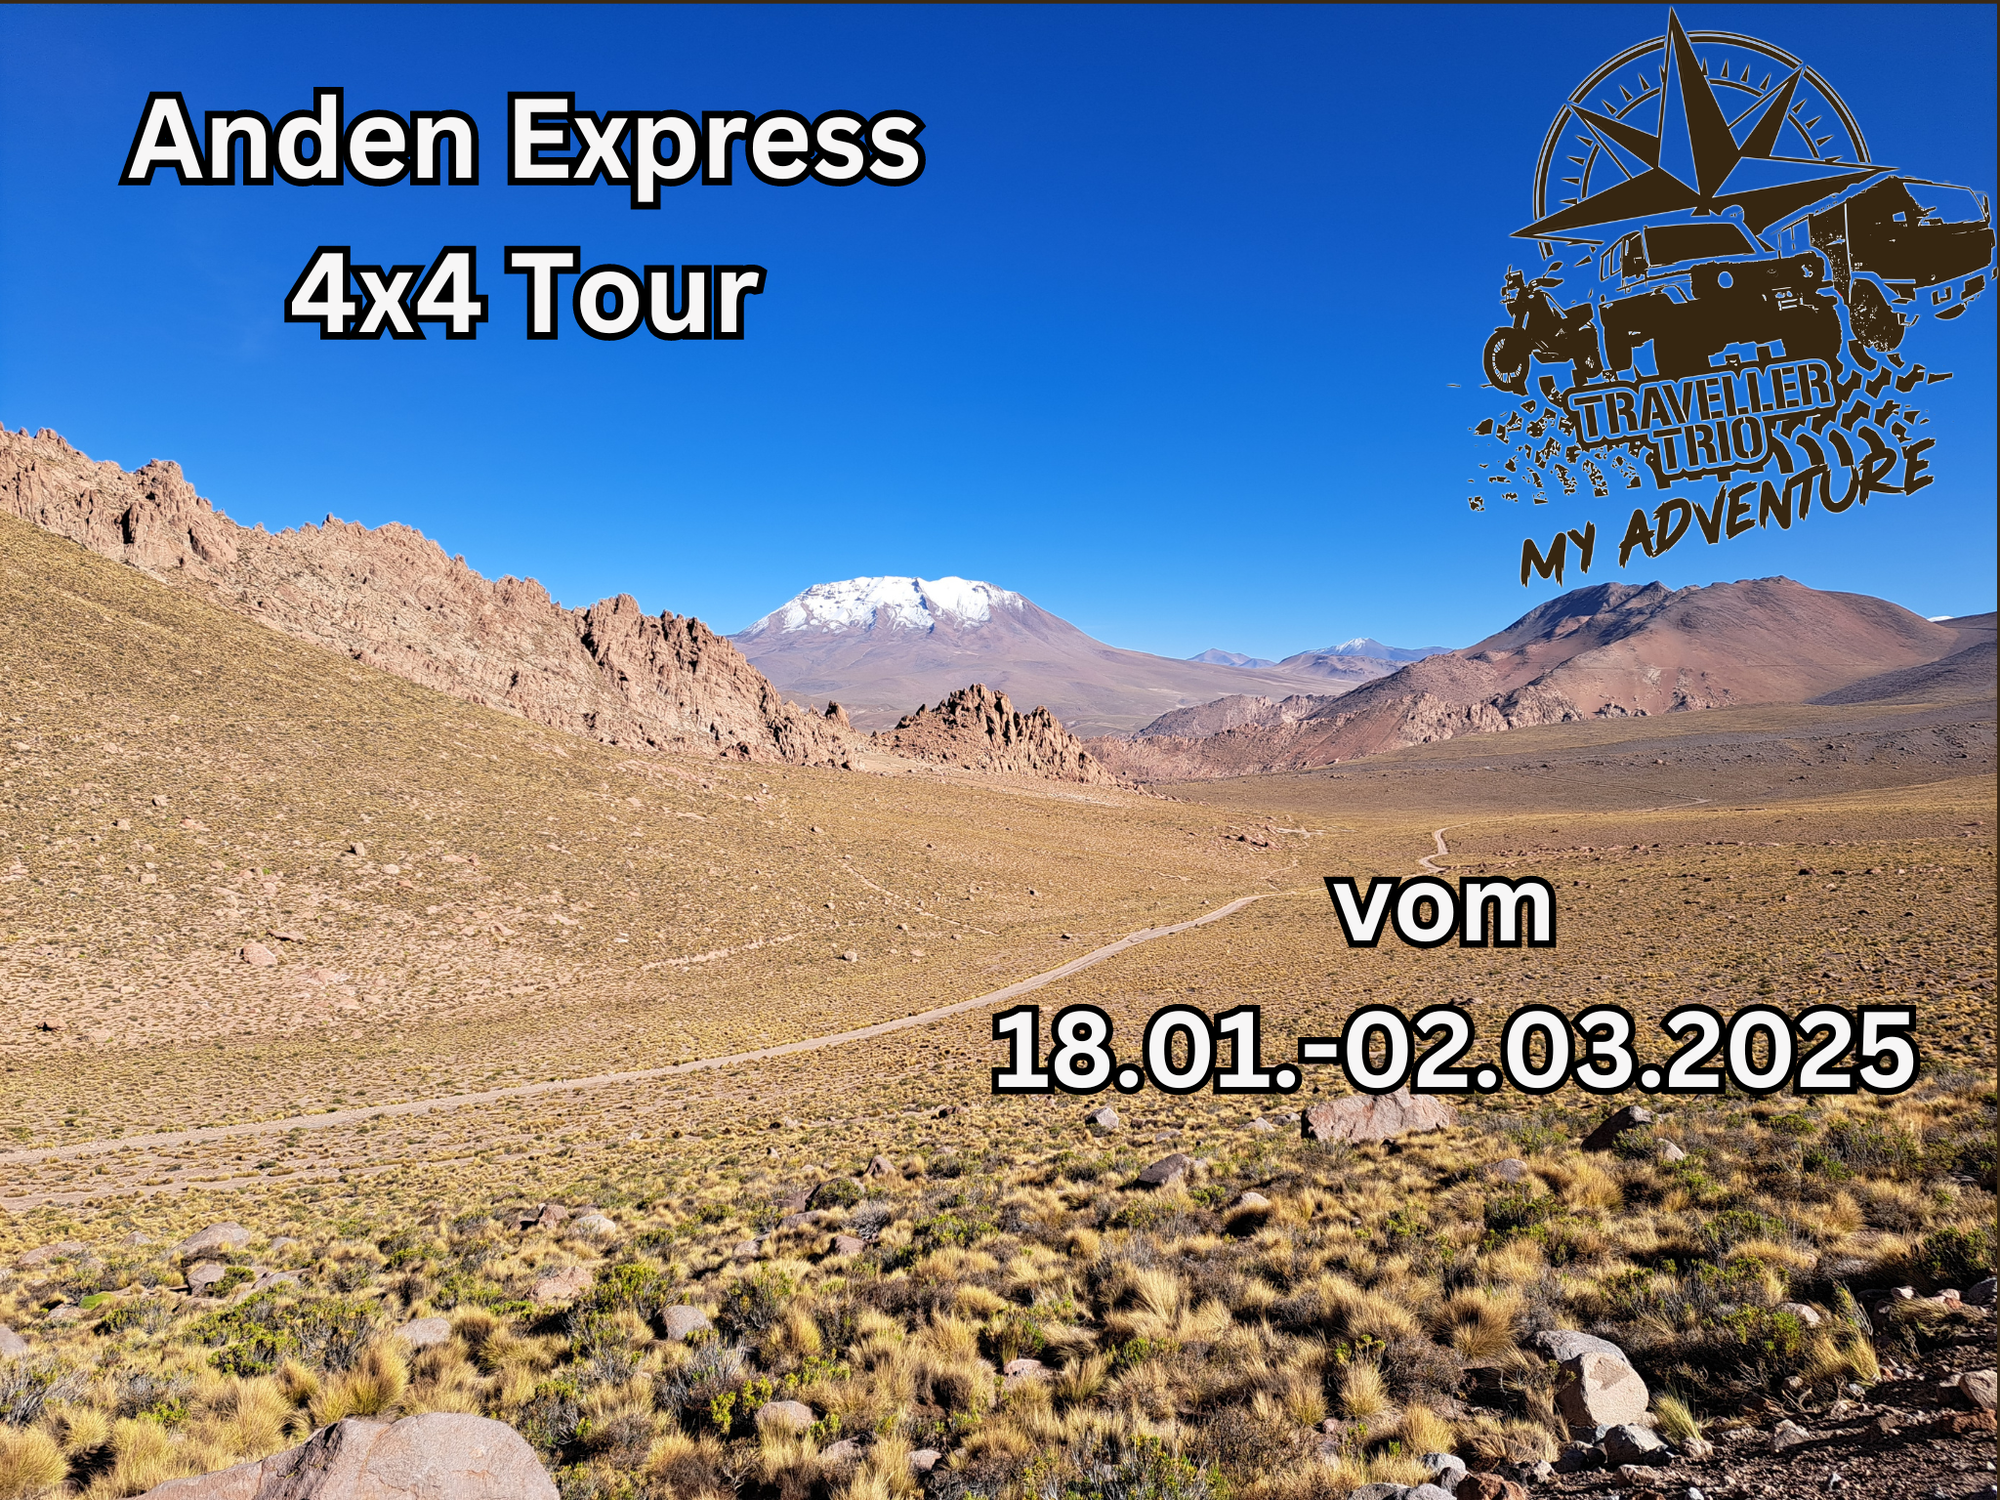 Anden Express 4x4 Tour vom 18.01.-02.03.2025